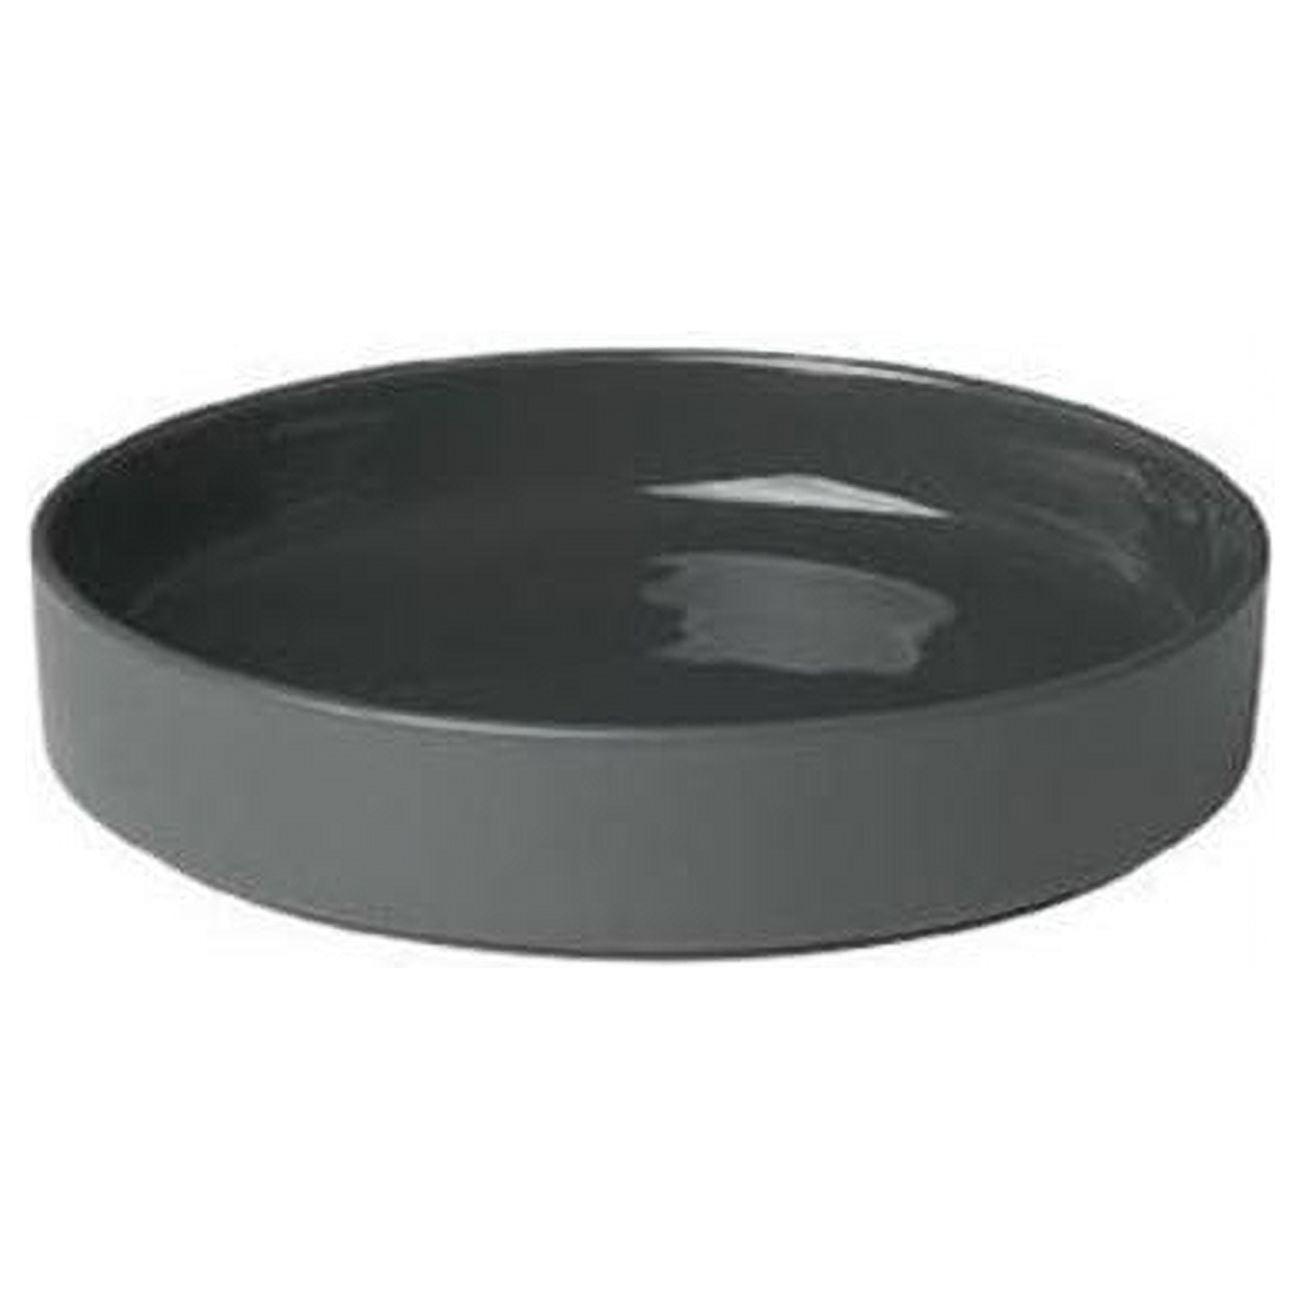 Agave Green 8" Ceramic Dessert Plate Set - Microwave Safe